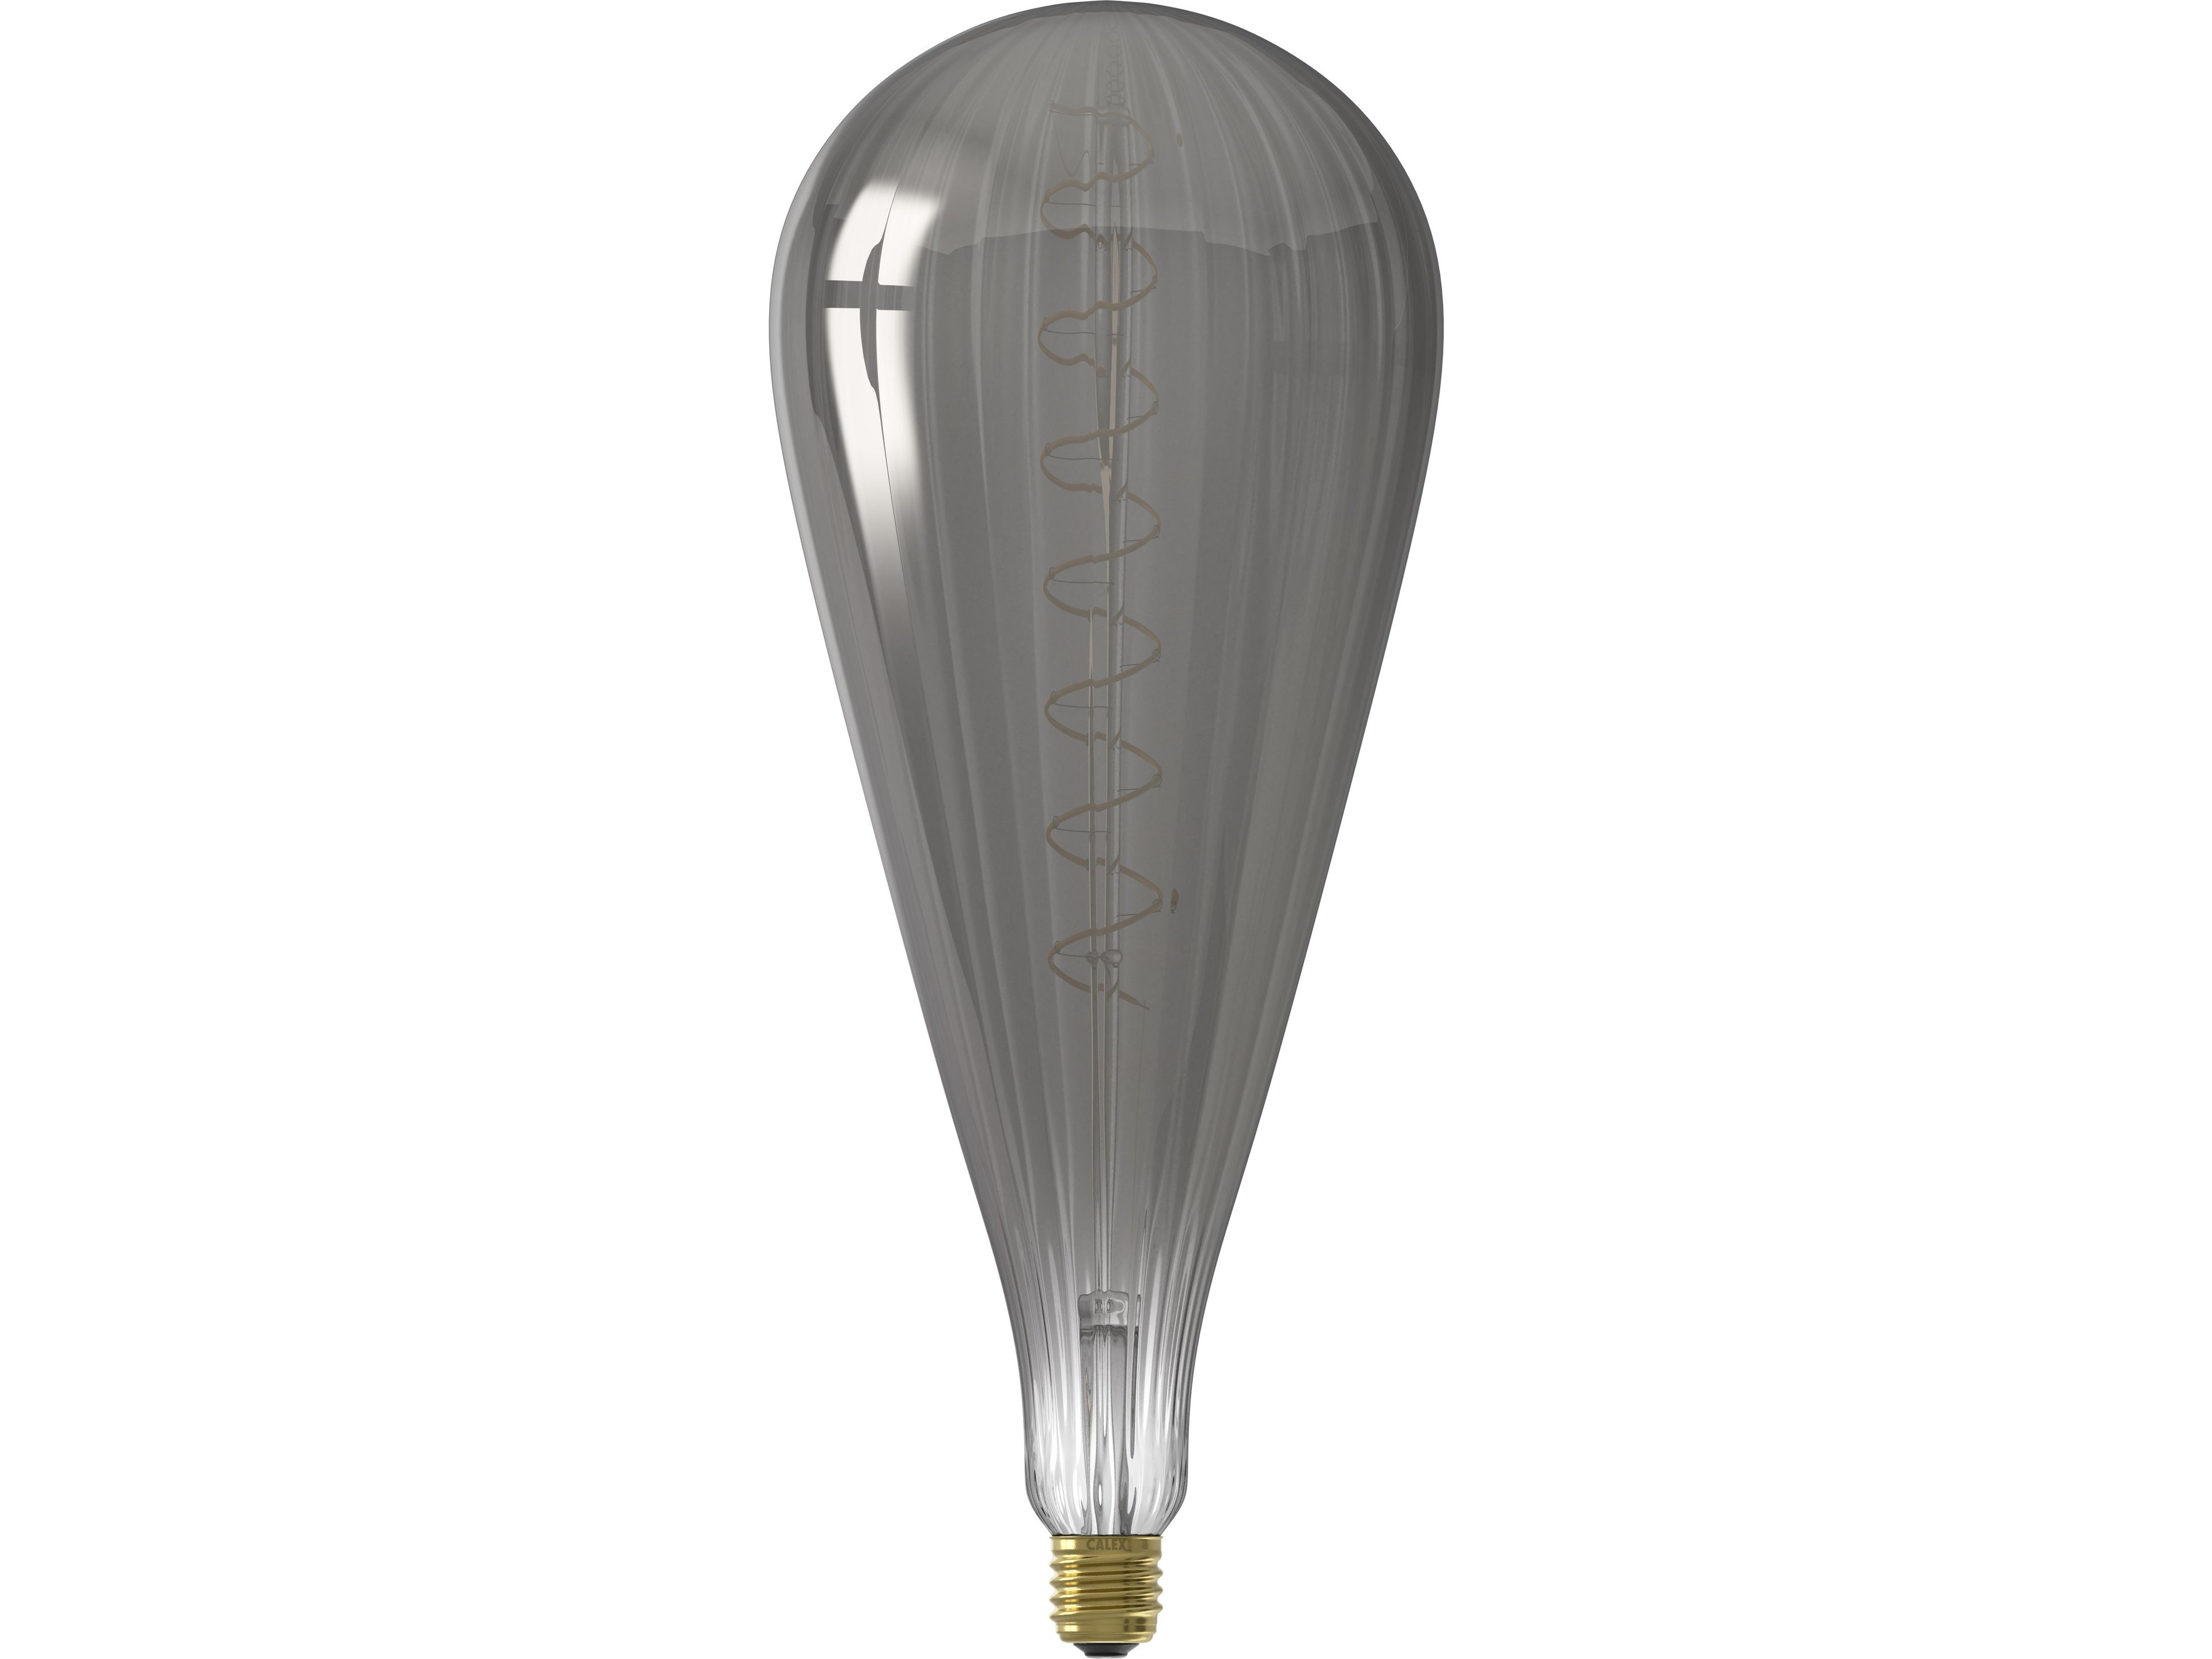 calex-malaga-titanium-led-lampe